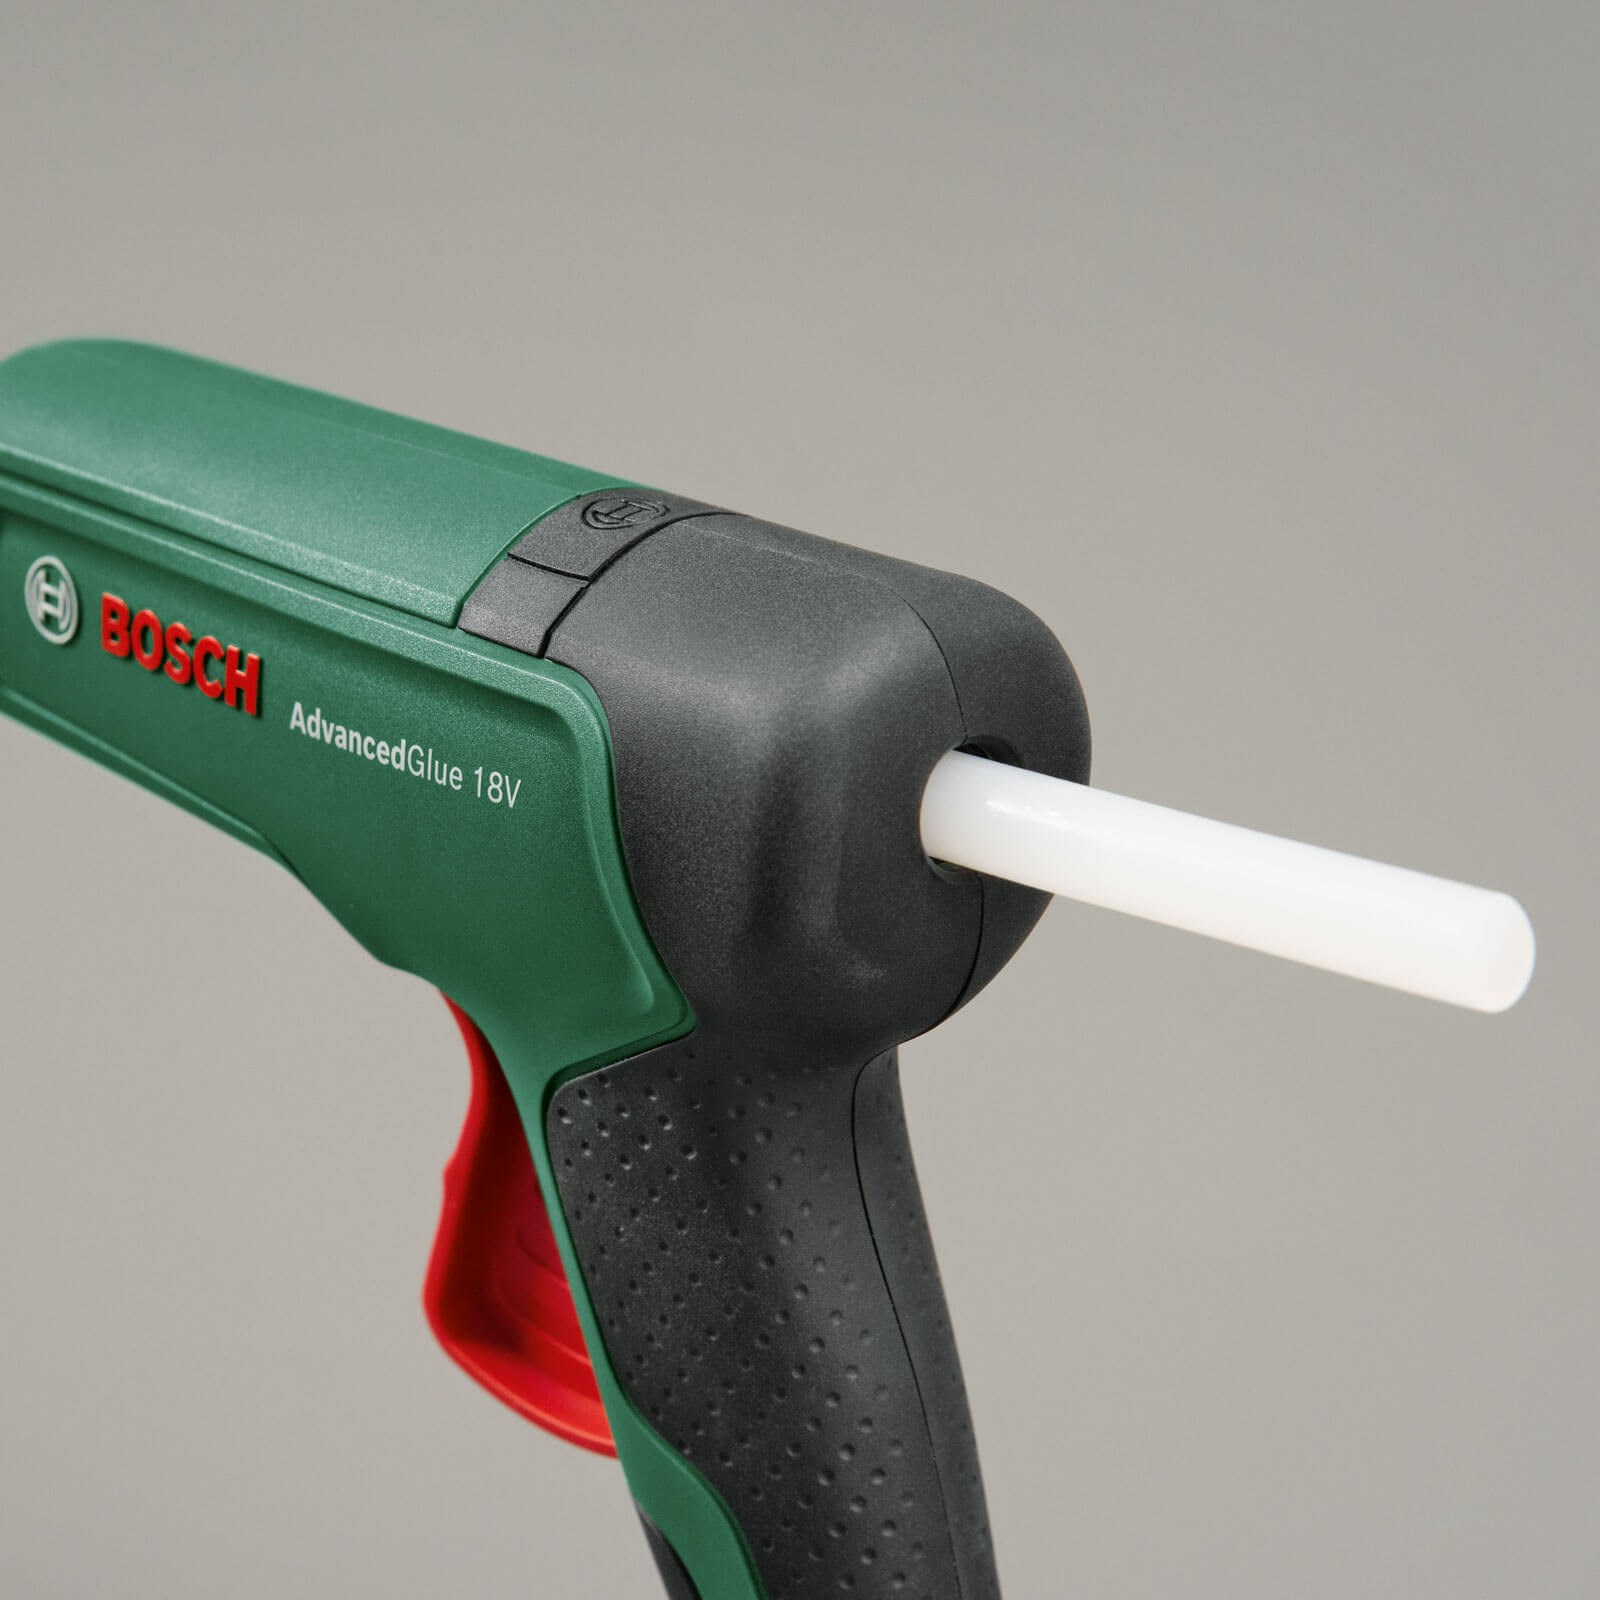 Bosch ADVANCEDGLUE P4A 18v Cordless Hot Glue Gun